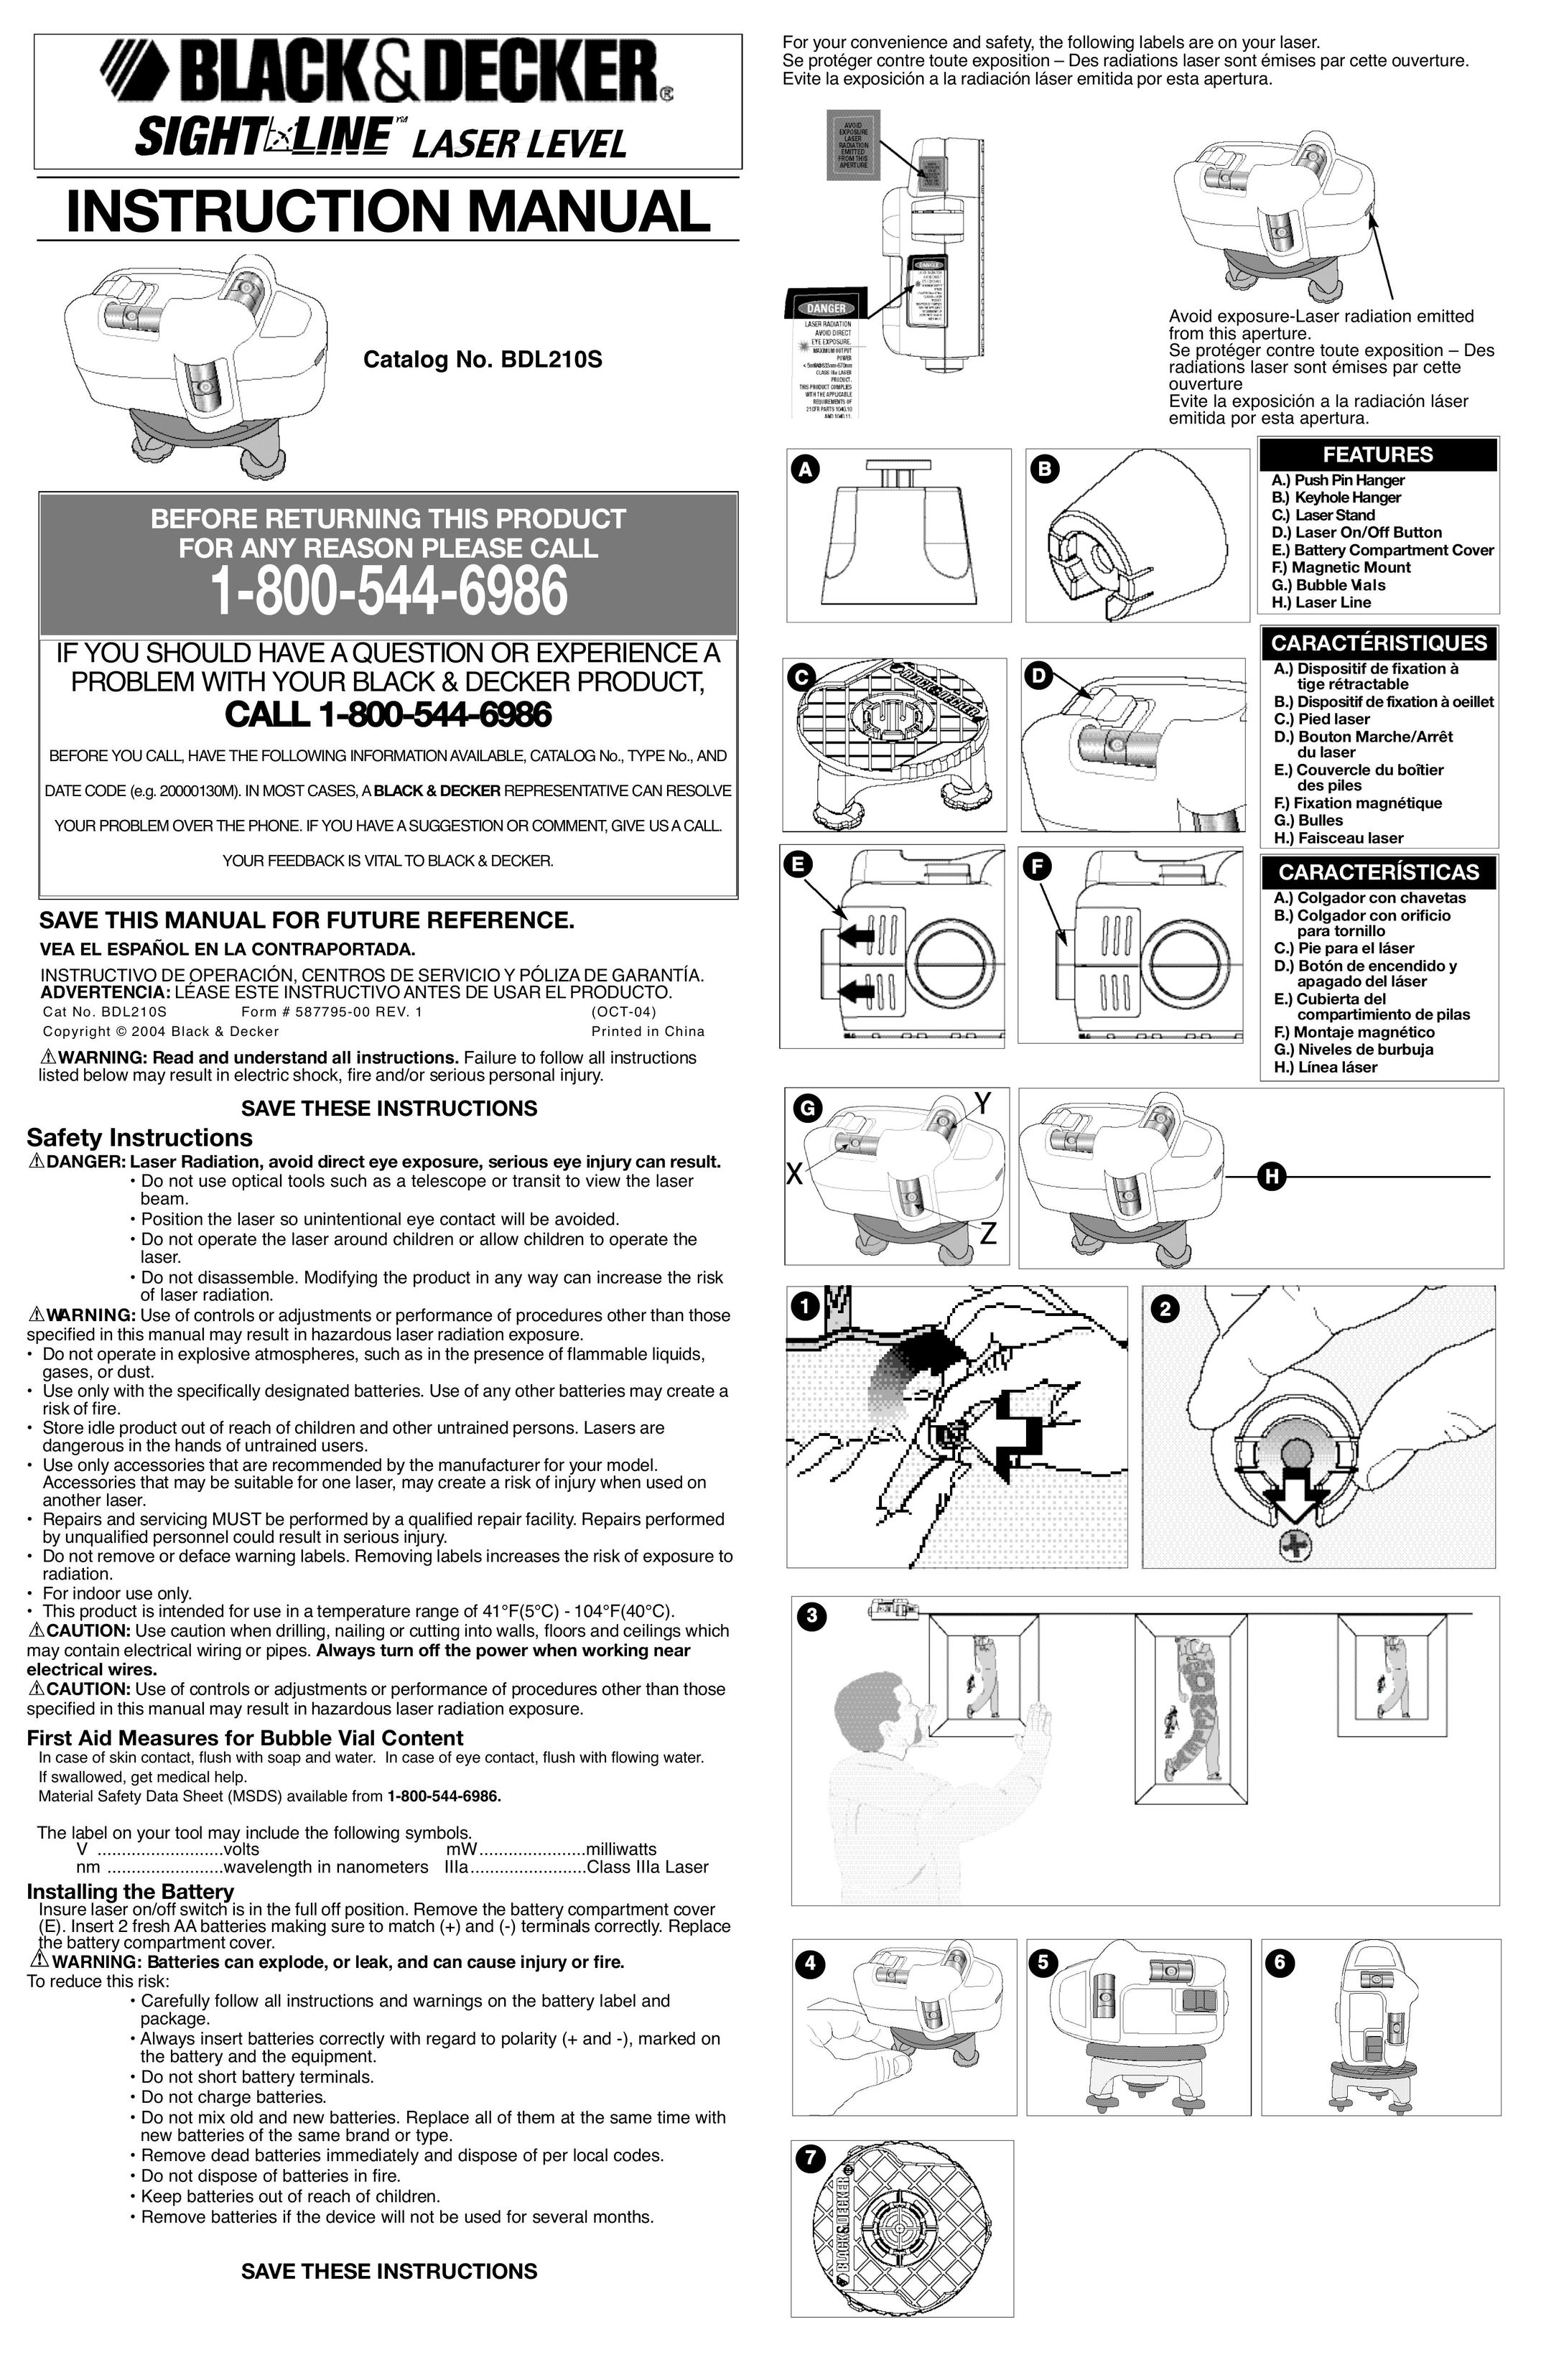 Black & Decker BDL210S Laser Level User Manual